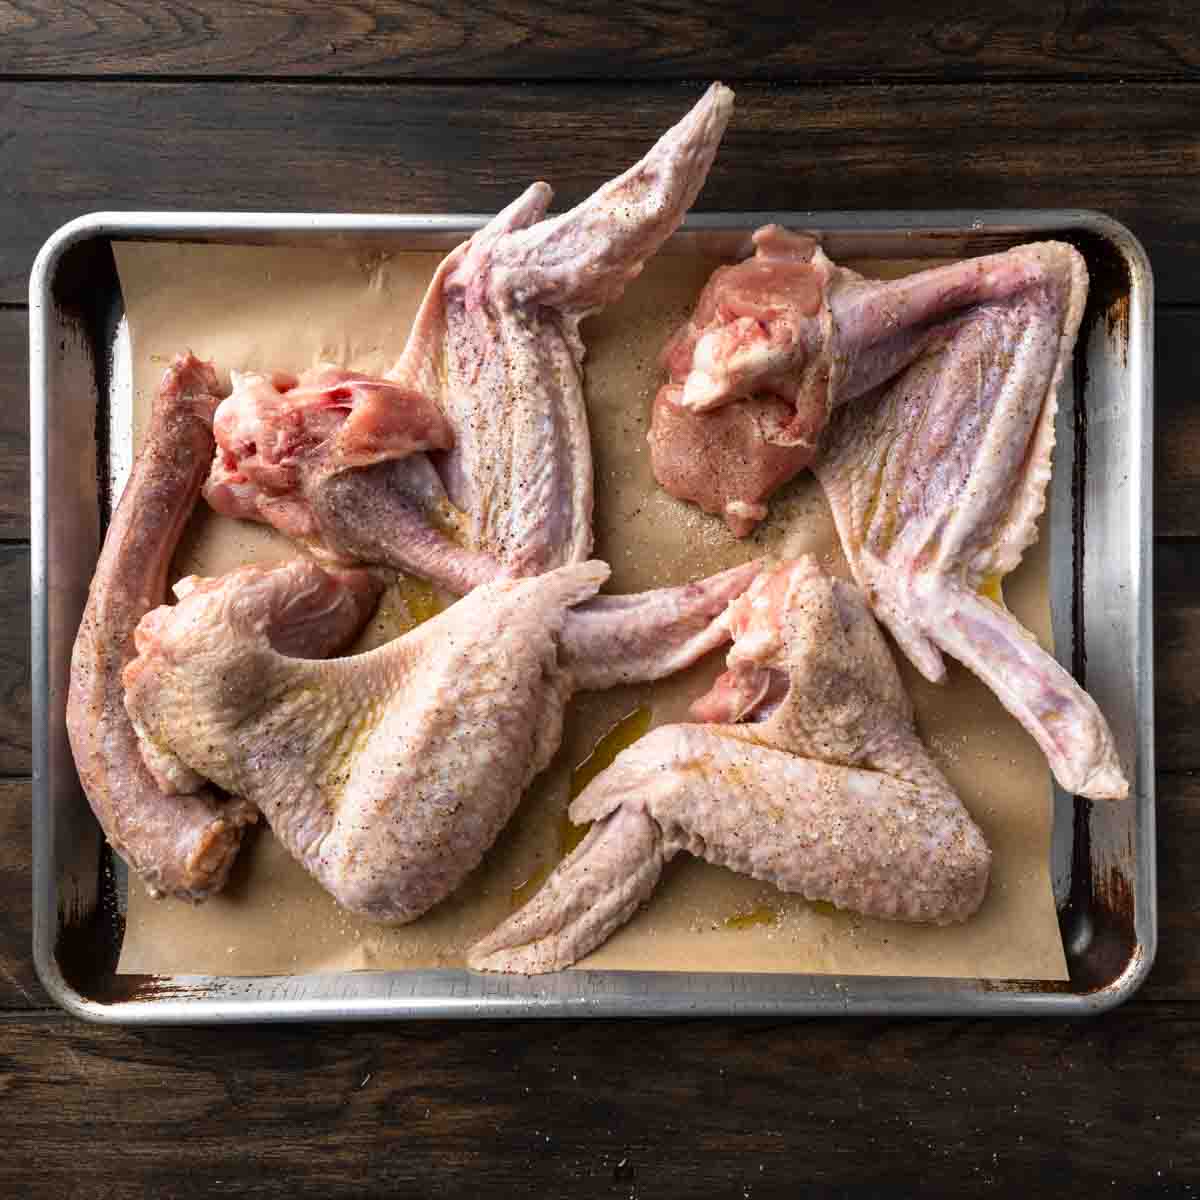 Raw seasoned turkey wings on a baking sheet.